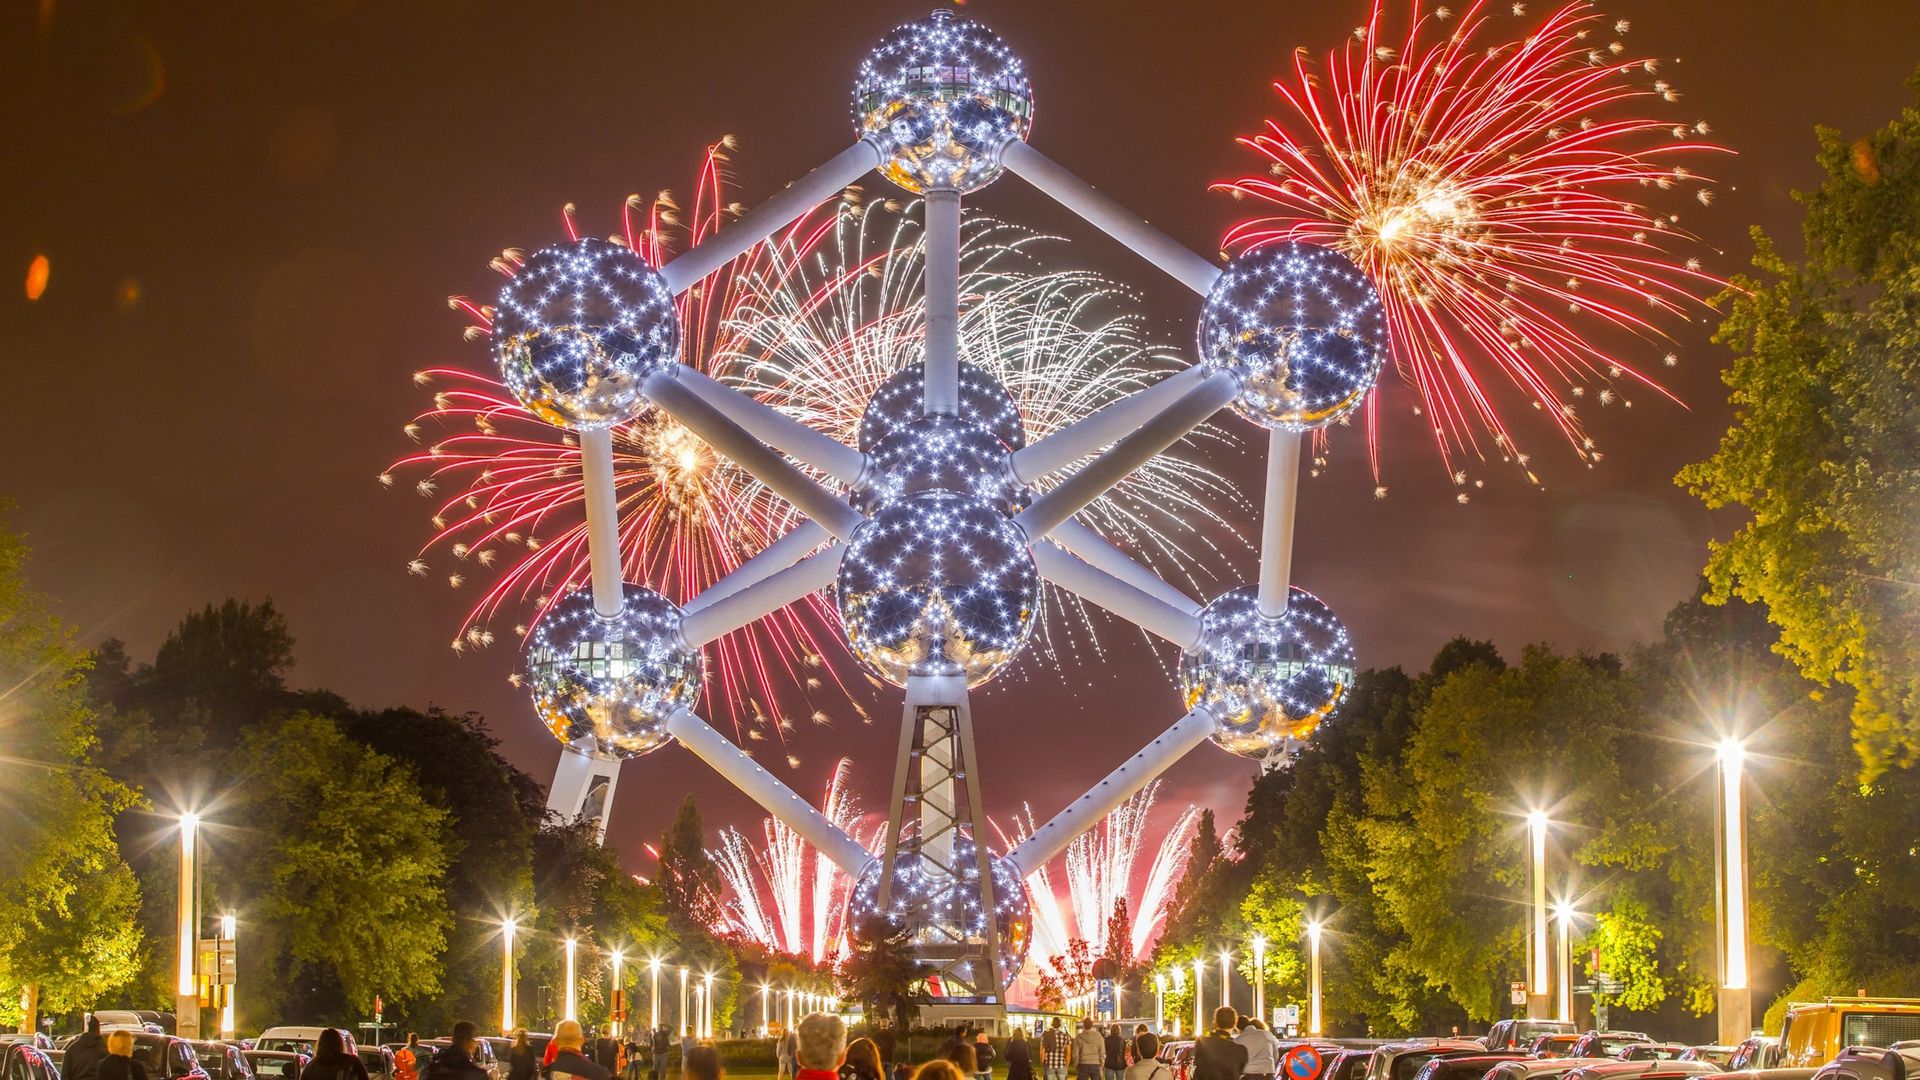 Plus de 650.000 visiteurs en 2019 à l'Atomium, la 3e meilleure année en termes d'affluence